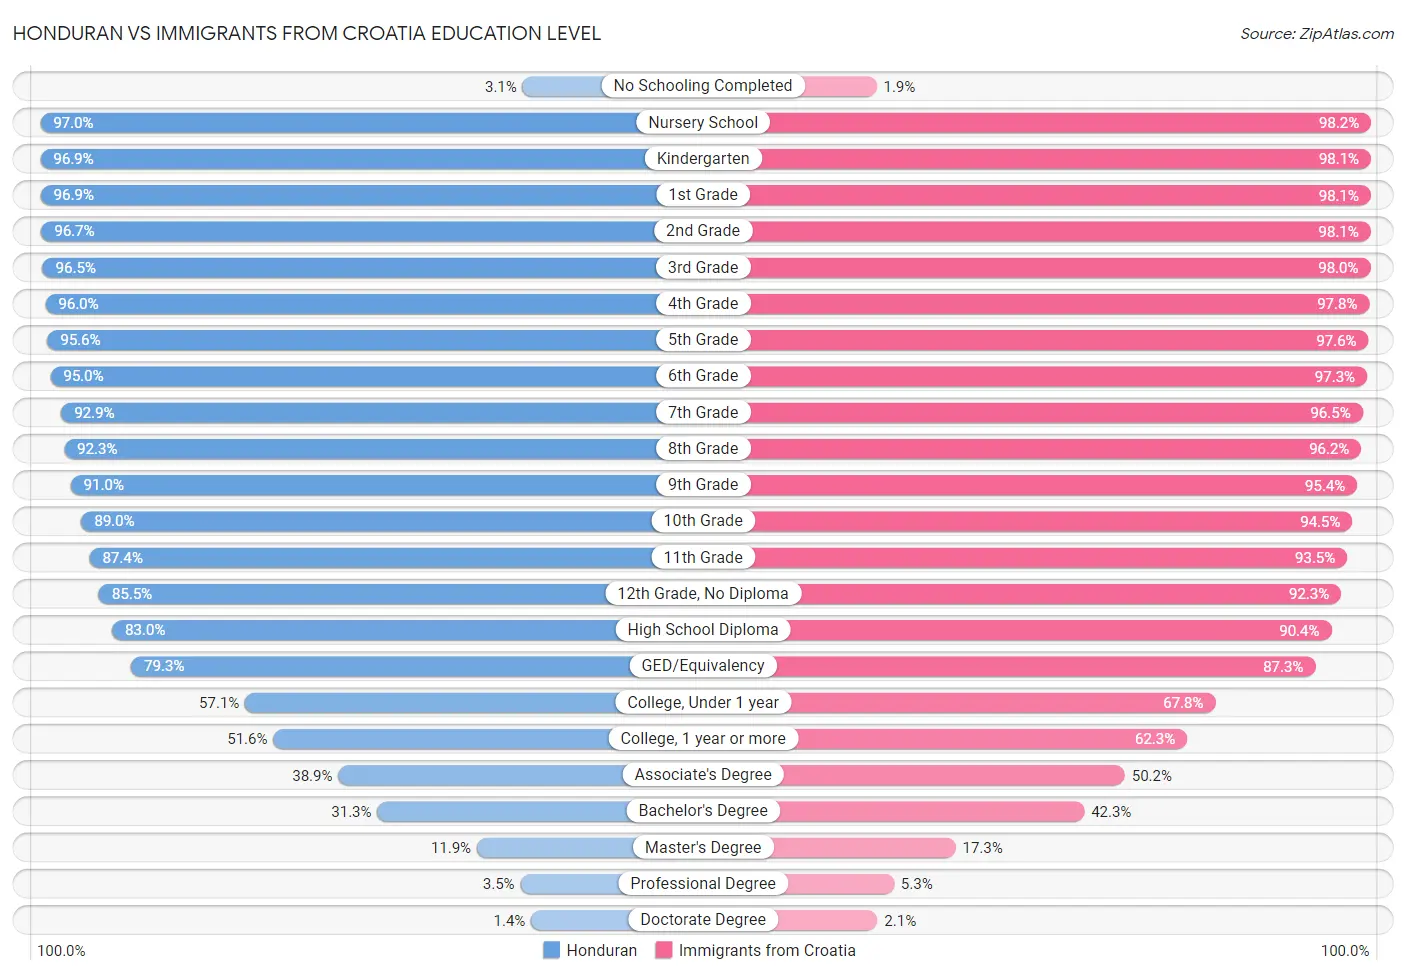 Honduran vs Immigrants from Croatia Education Level